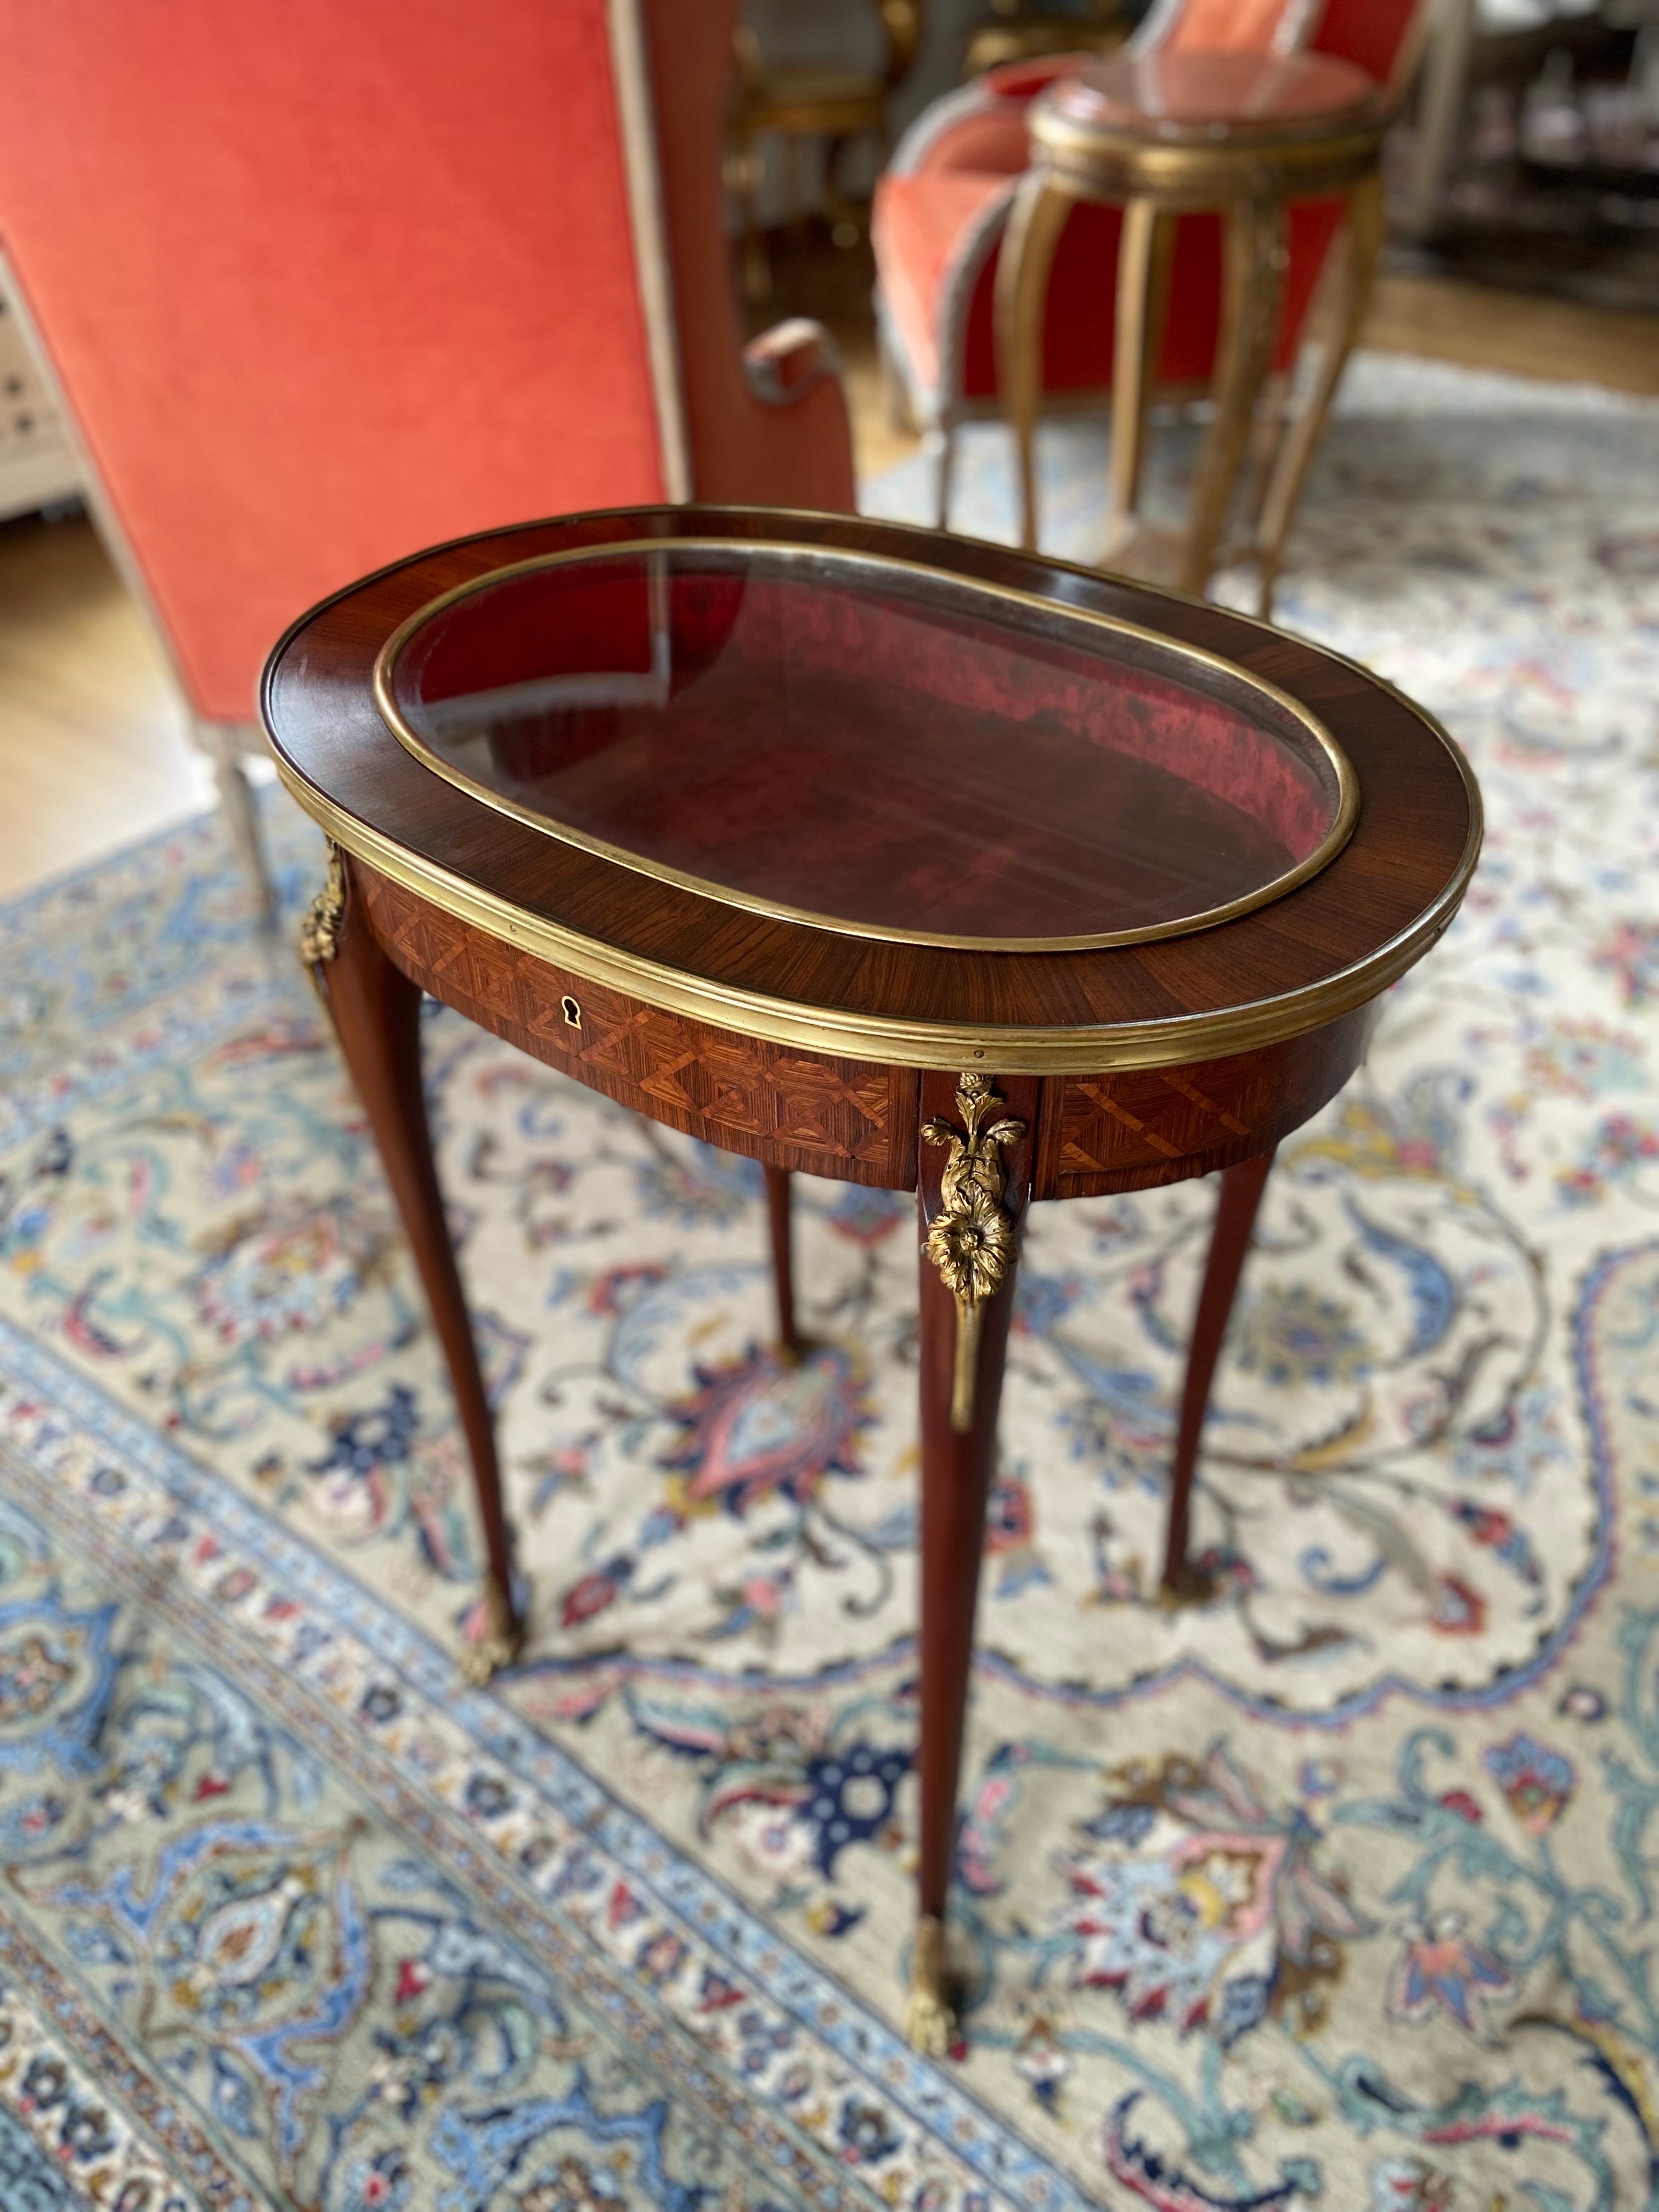 Eine feine Qualität Französisch Ende des 19. Jahrhunderts Mahagoni handgeschnitzt Intarsien ovalen Tisch bijouterie Schrank in Louis XVI-Stil. Der Glasdeckel öffnet sich und gibt den Blick auf das Innere aus rotem Samt frei. Er steht auf vier